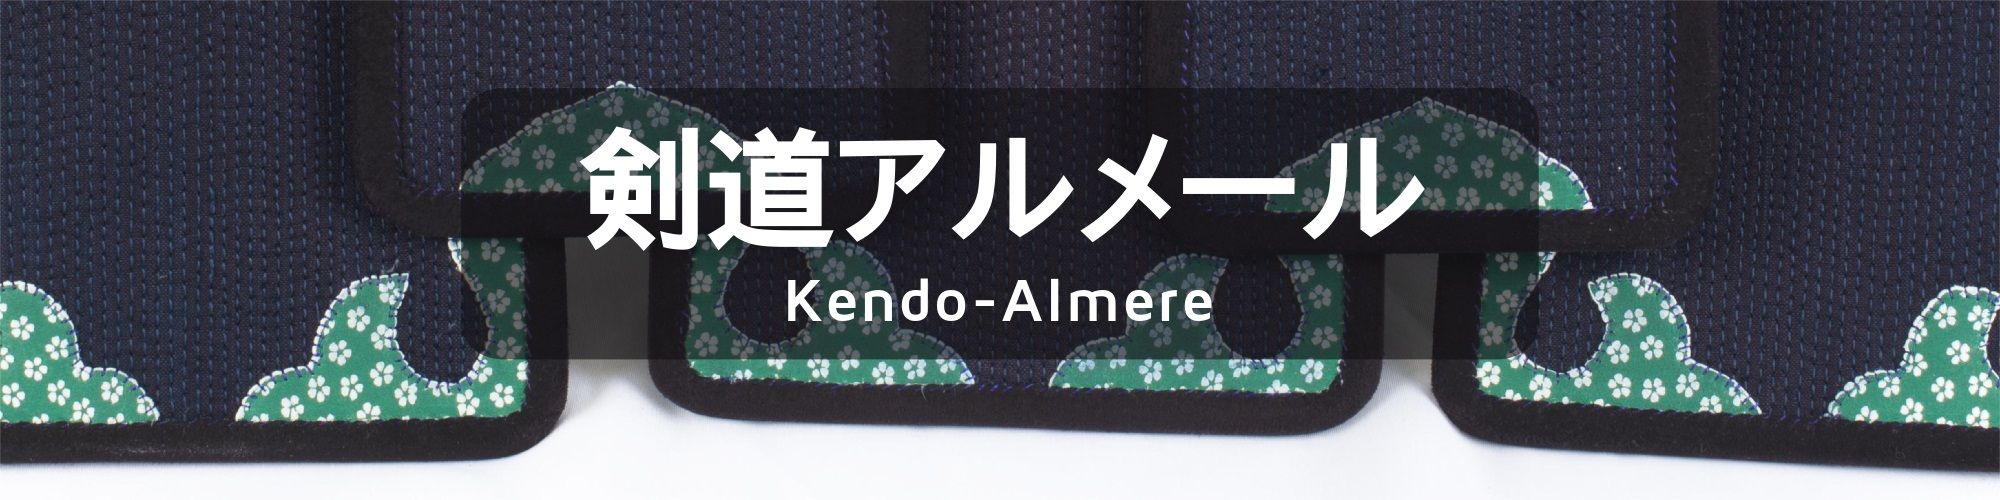 Kendo-Almere